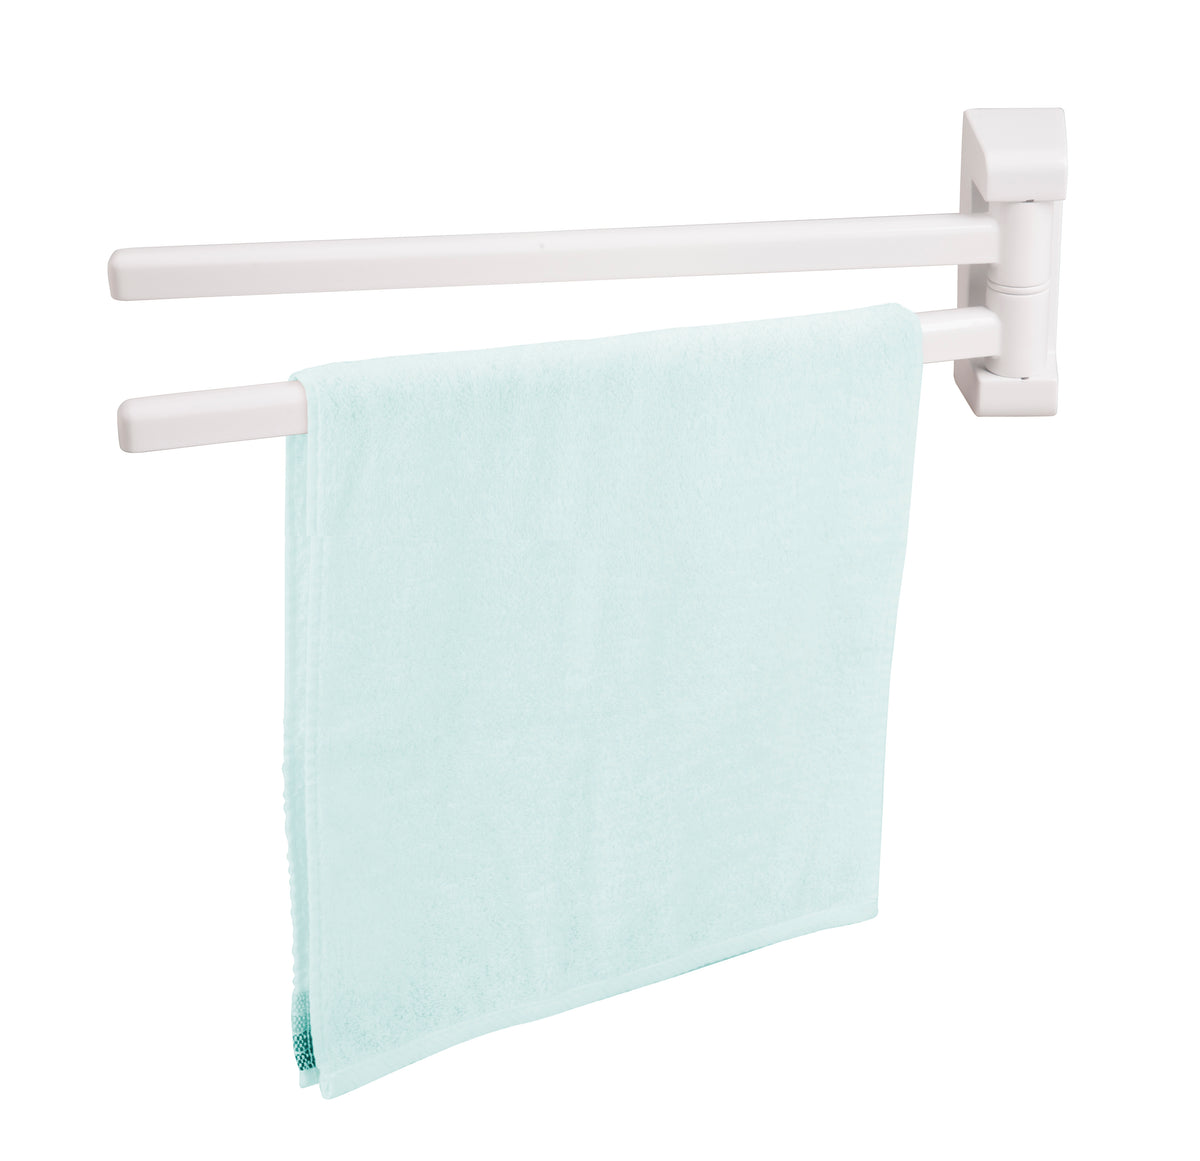 Baseline handdoekrek 2 stangen draaibaar wit